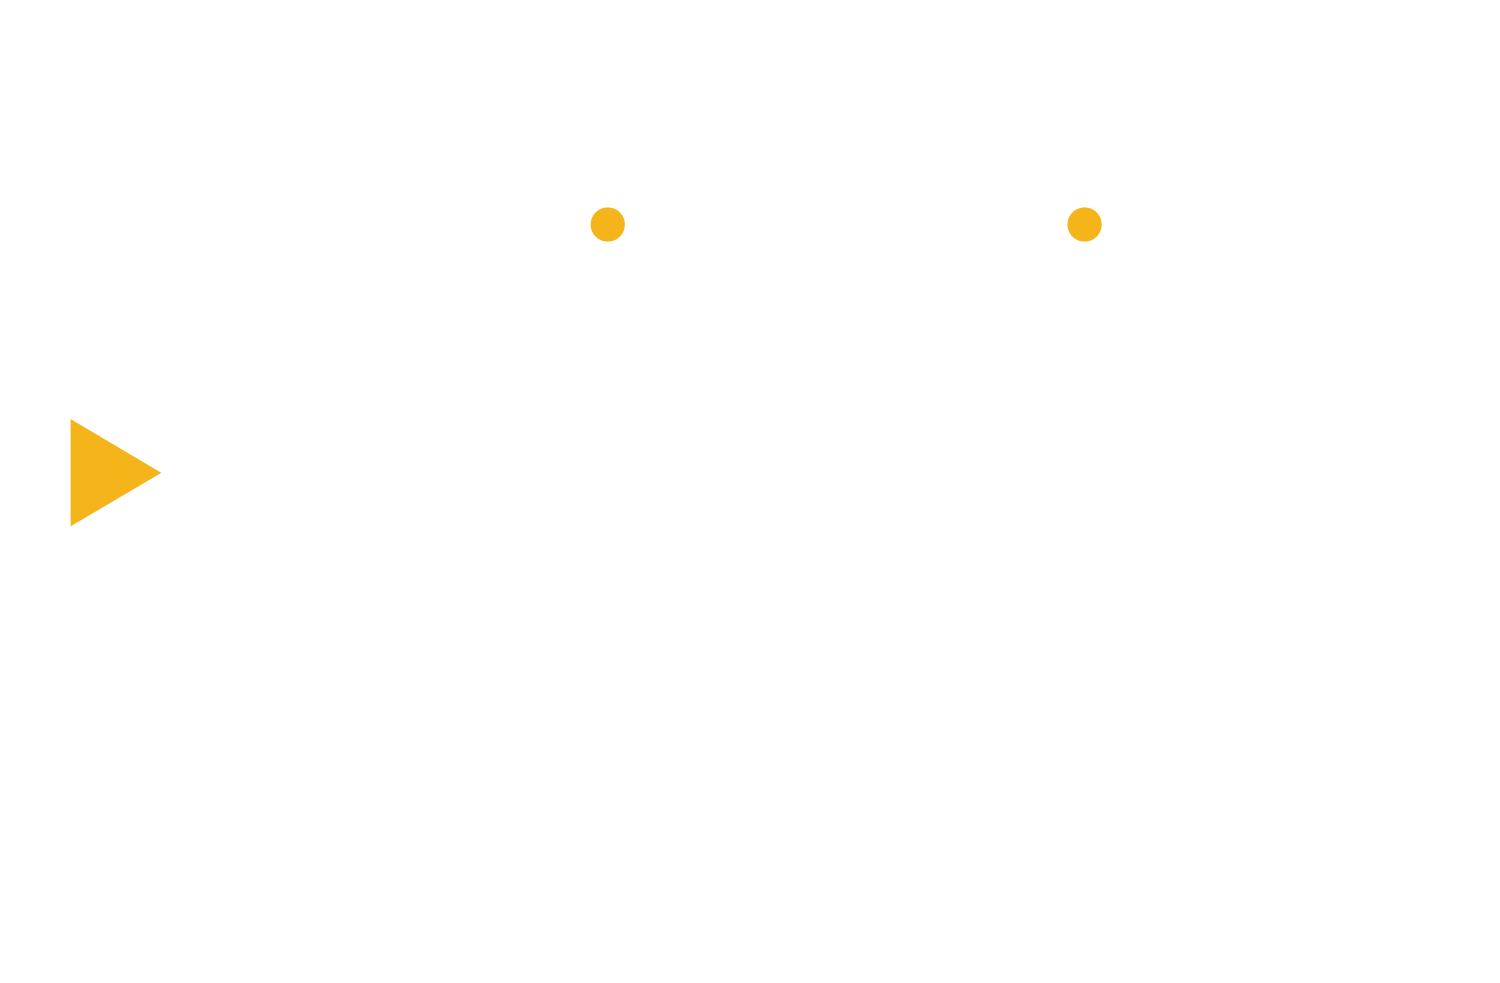 DropTop Social